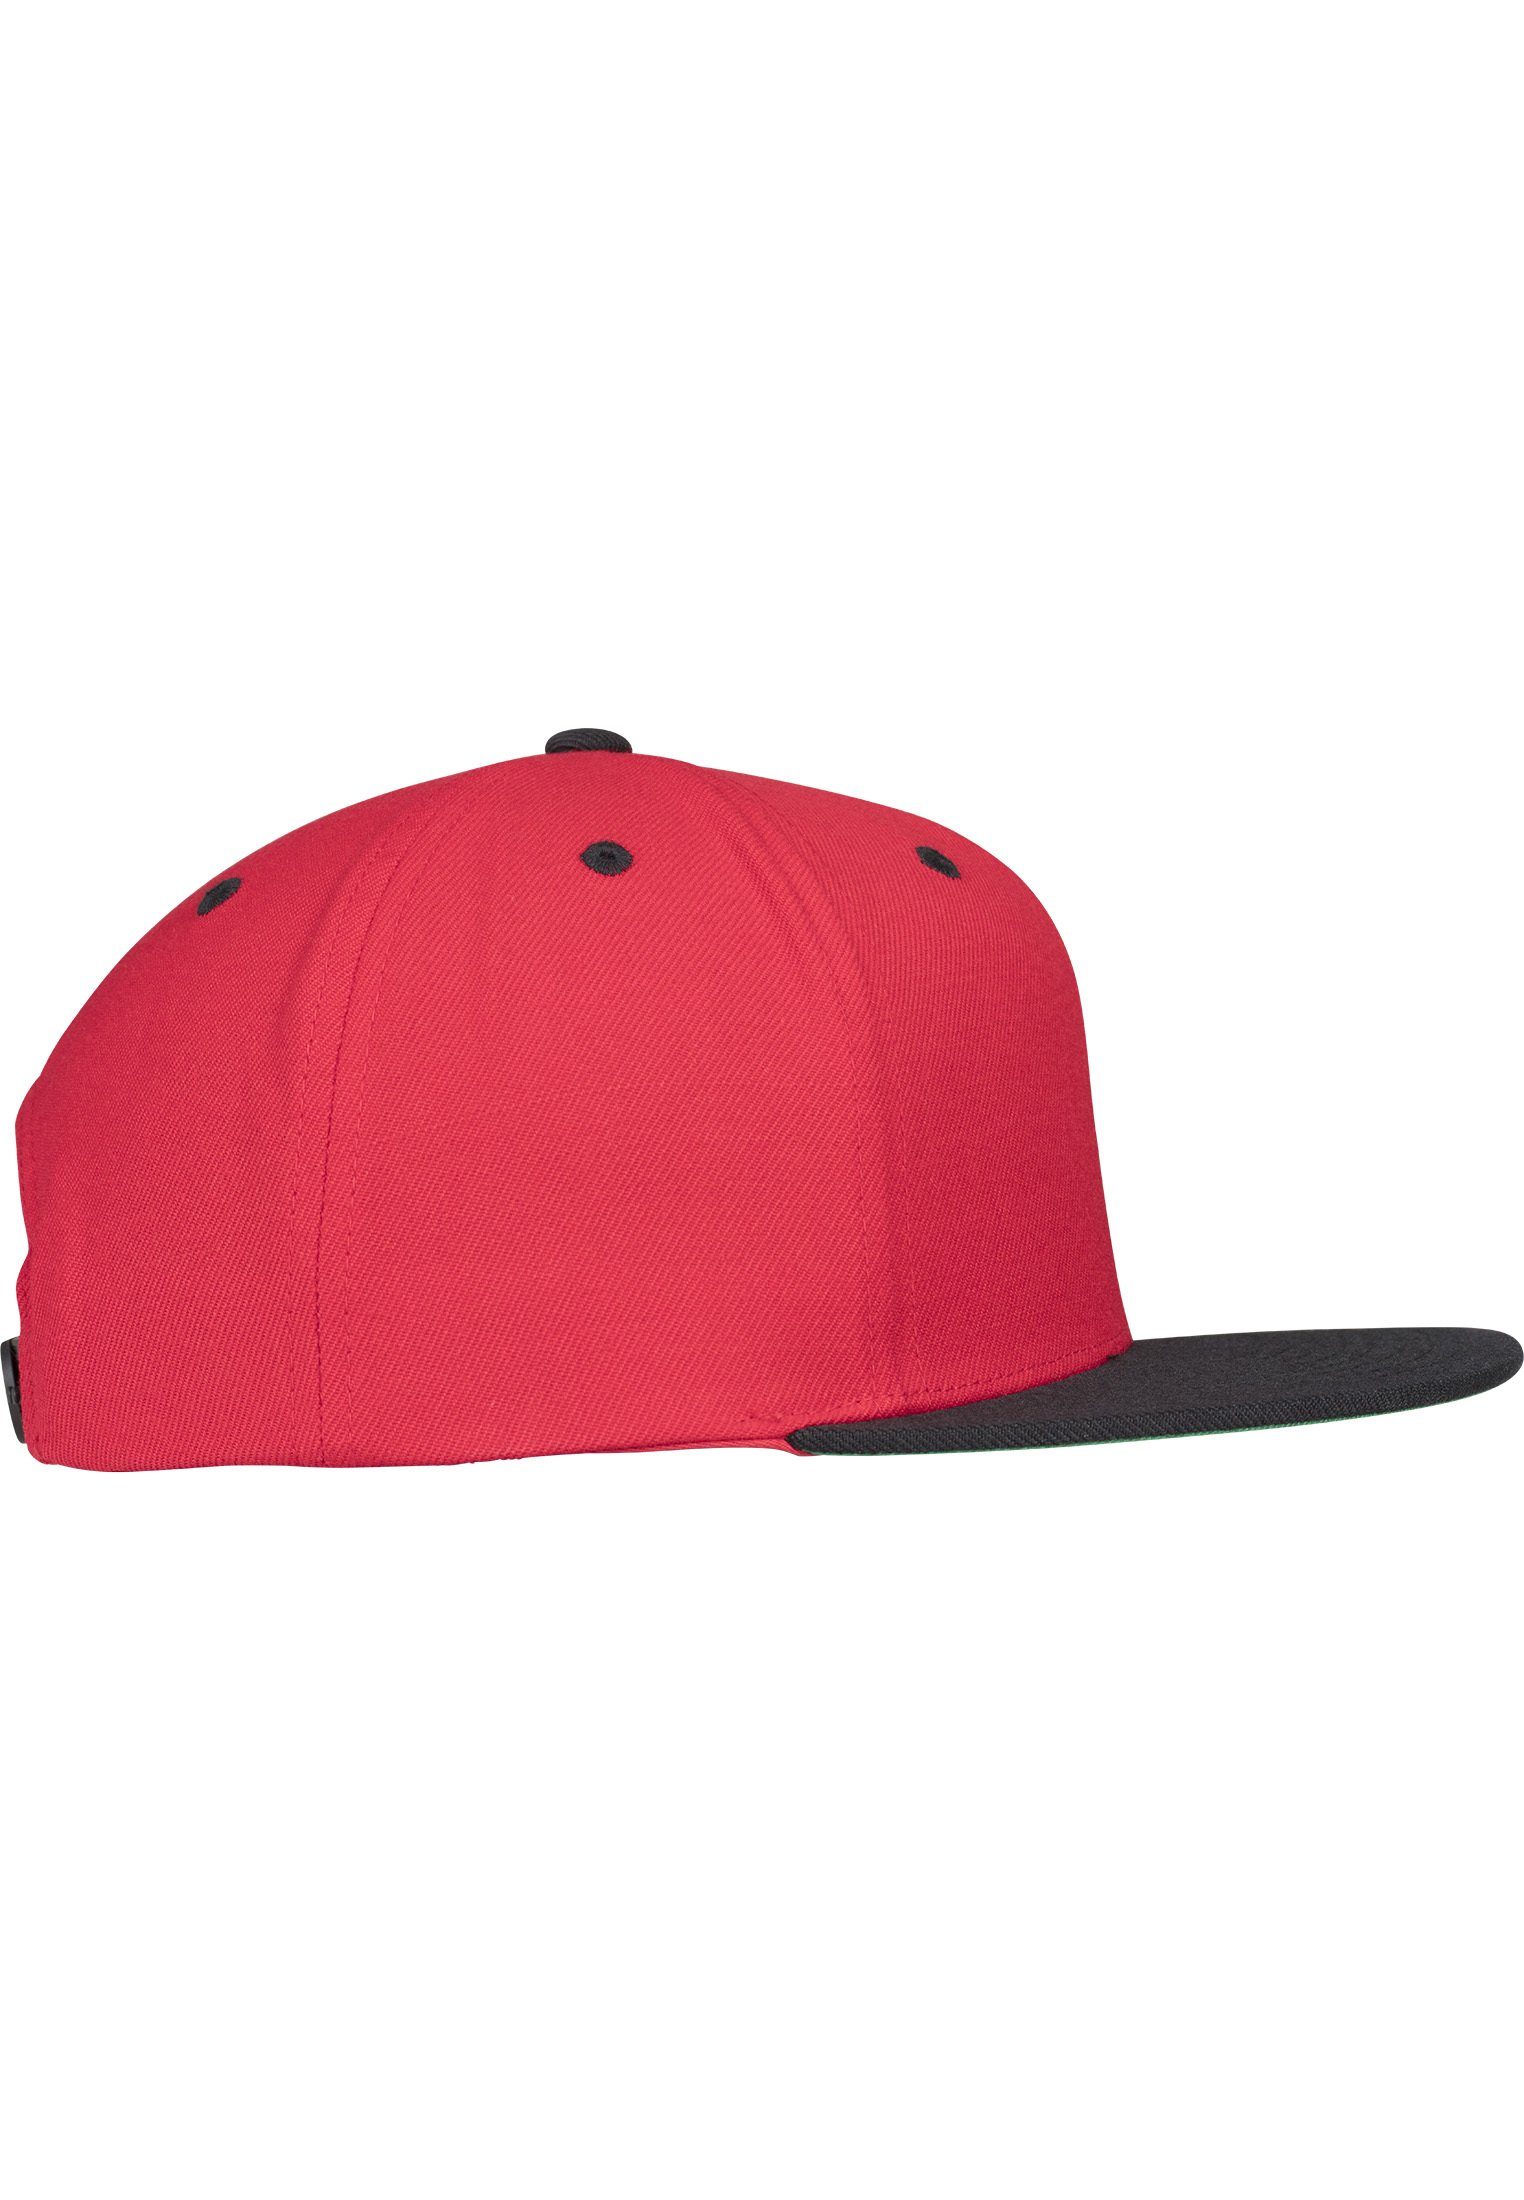 2-Tone red/black Flex Snapback Classic Snapback Cap Flexfit